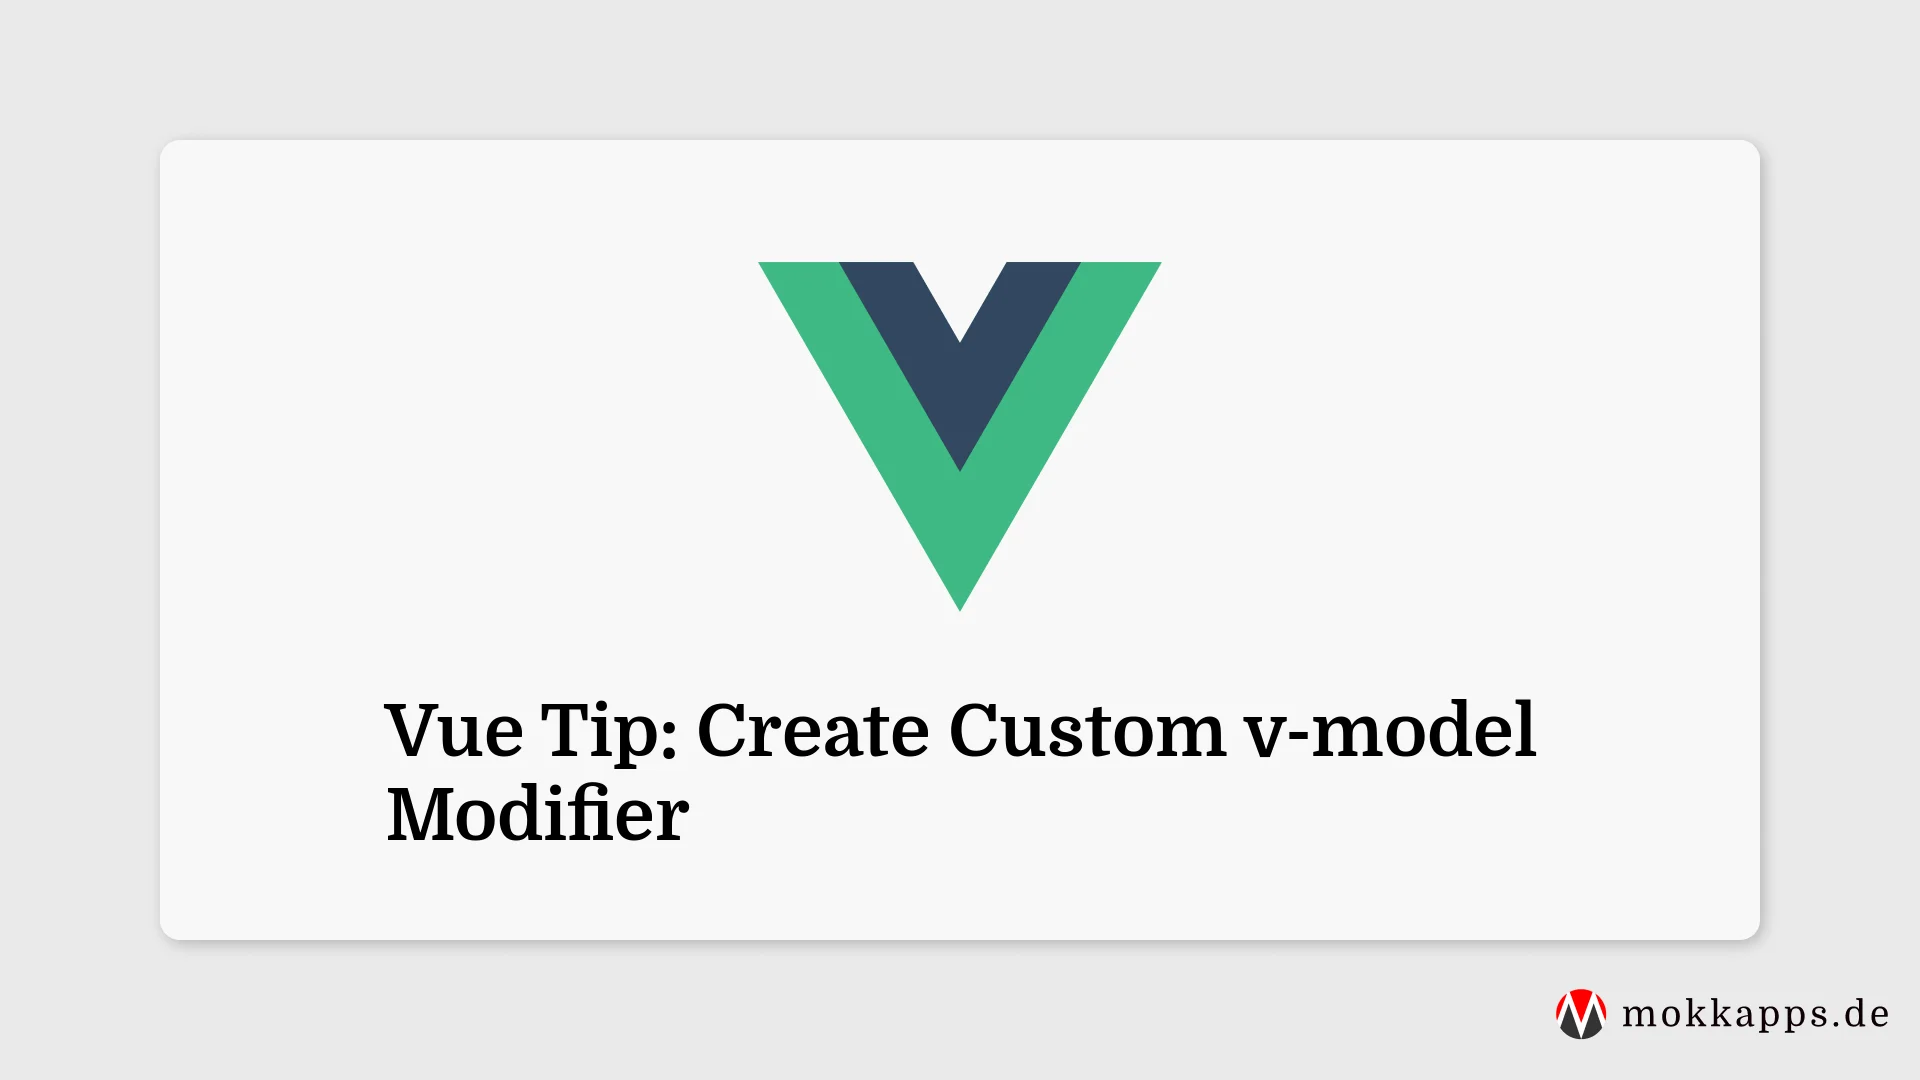 Vue Tip: Create Custom v-model Modifier Image